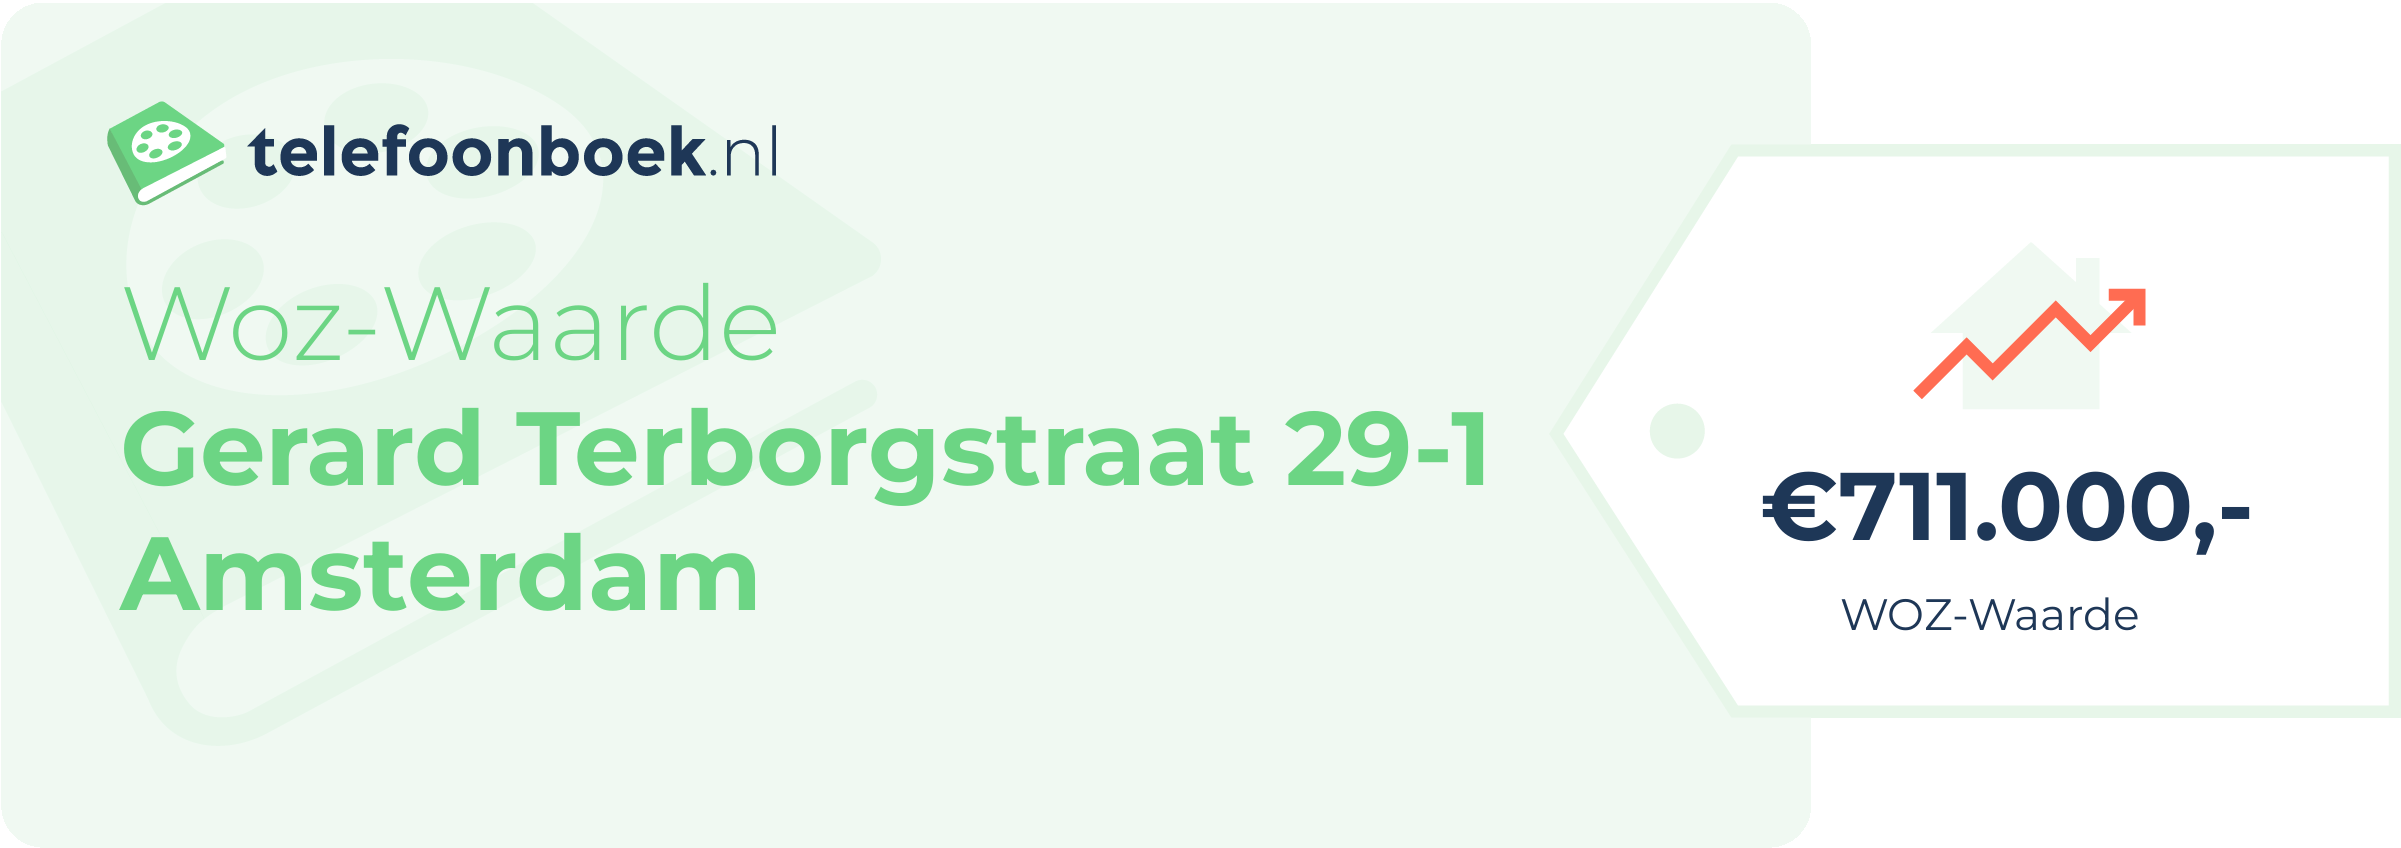 WOZ-waarde Gerard Terborgstraat 29-1 Amsterdam